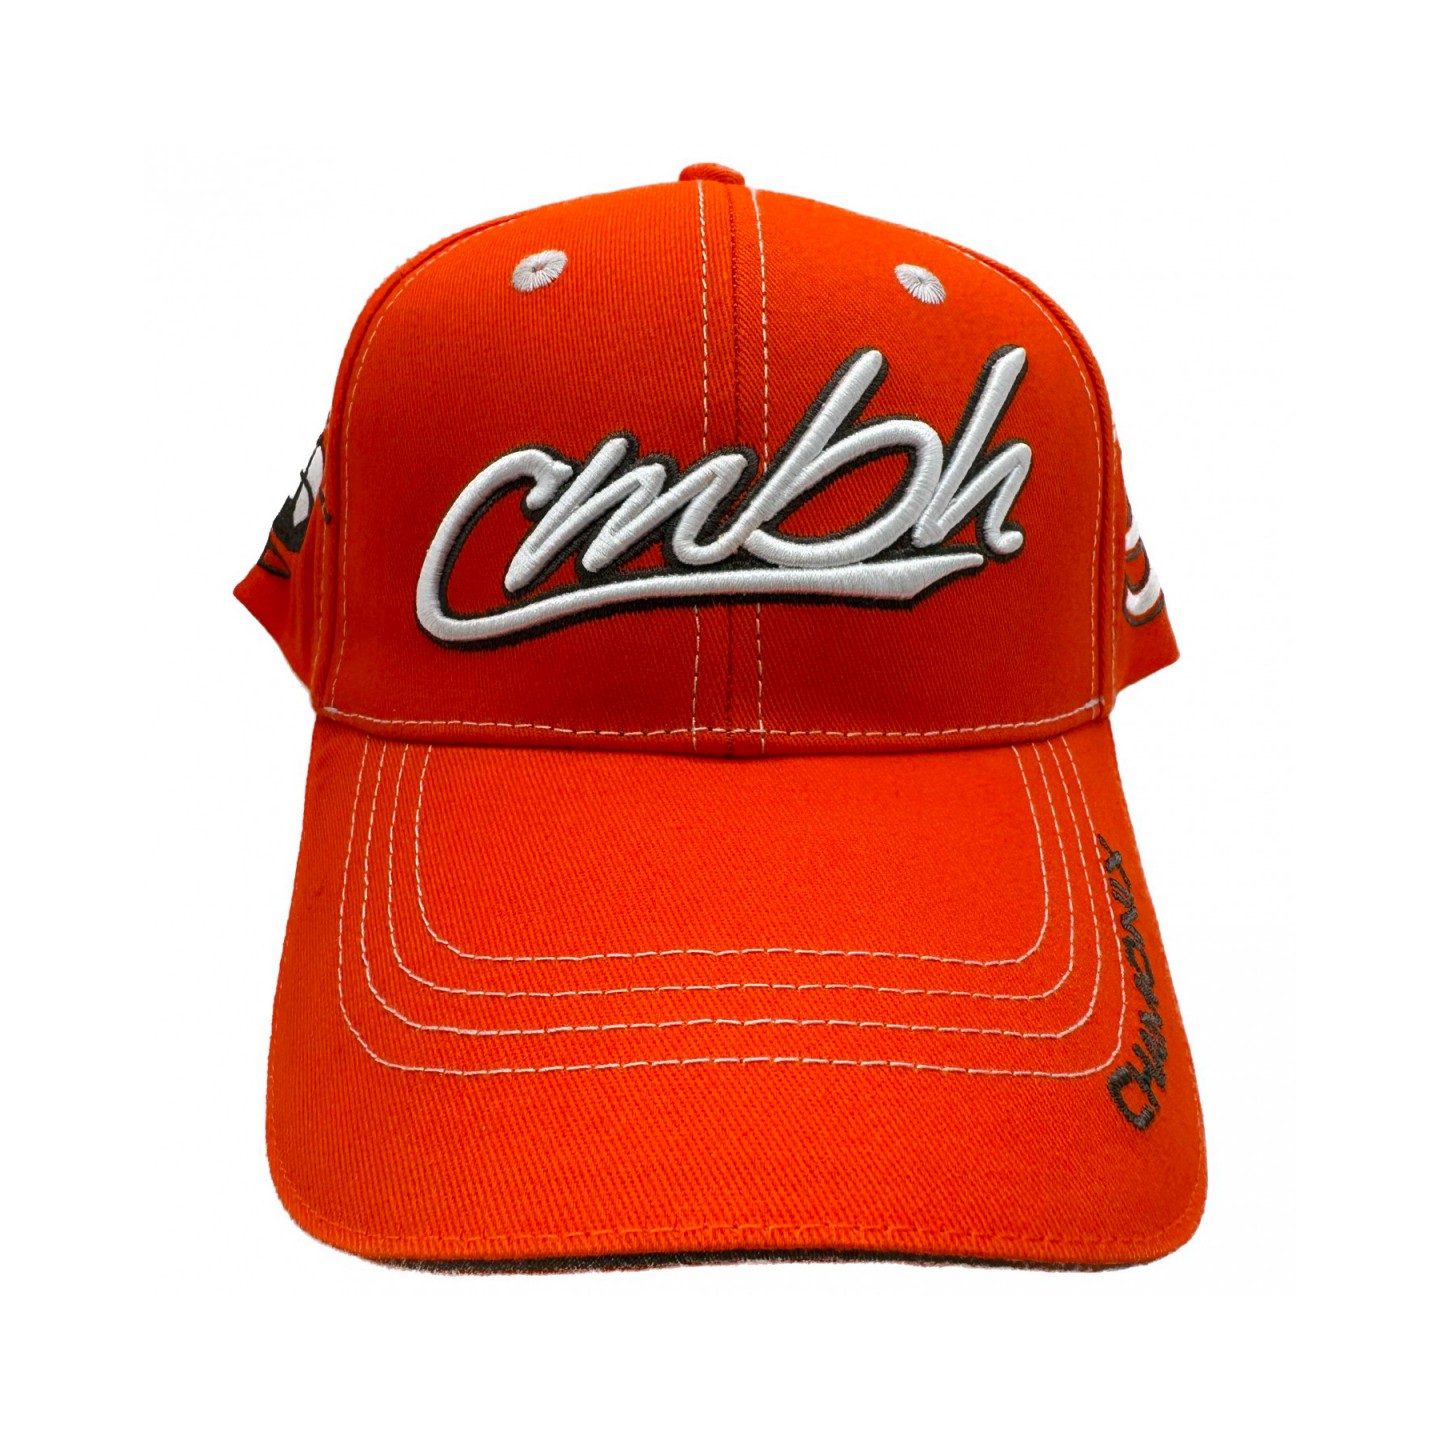 Embroidered cap - Orange